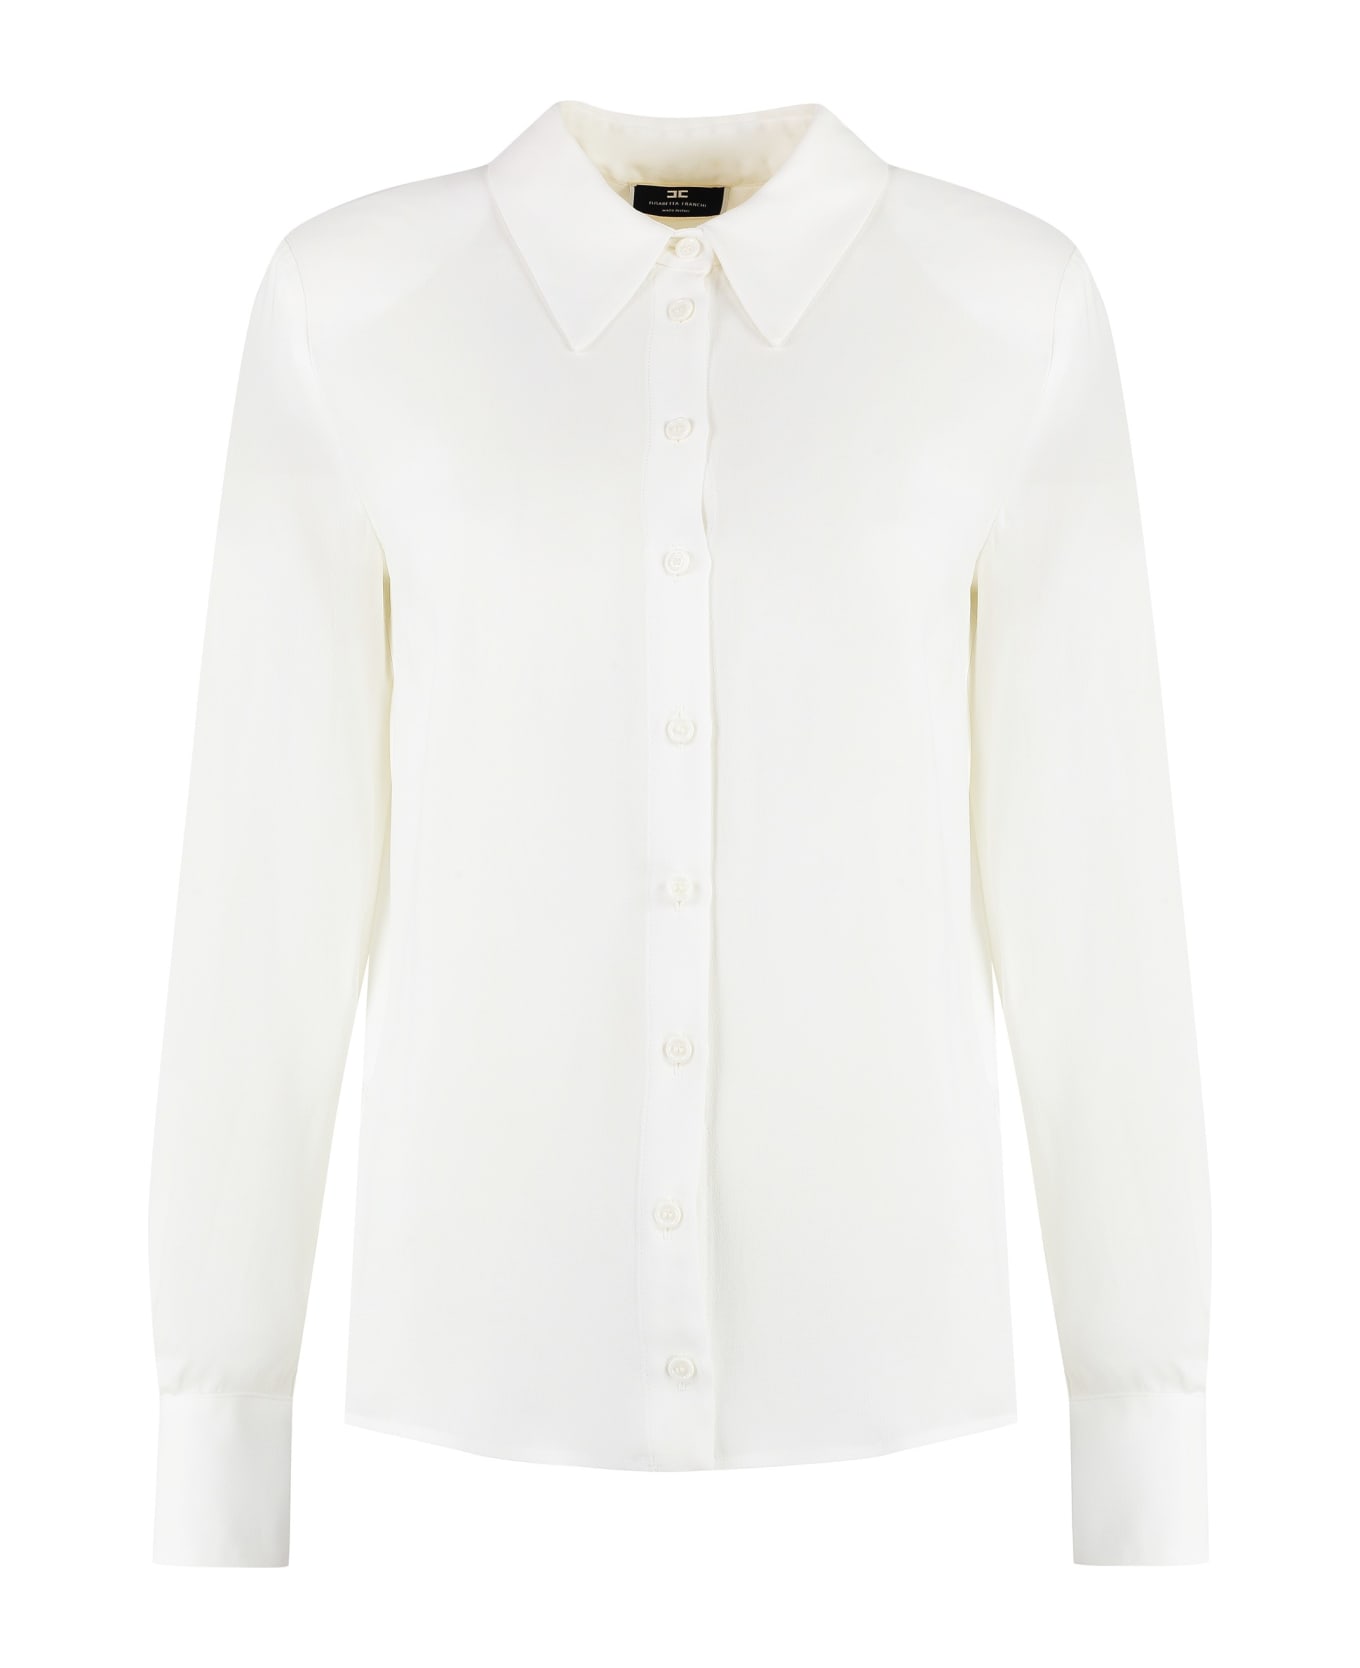 Elisabetta Franchi Georgette Shirt - White